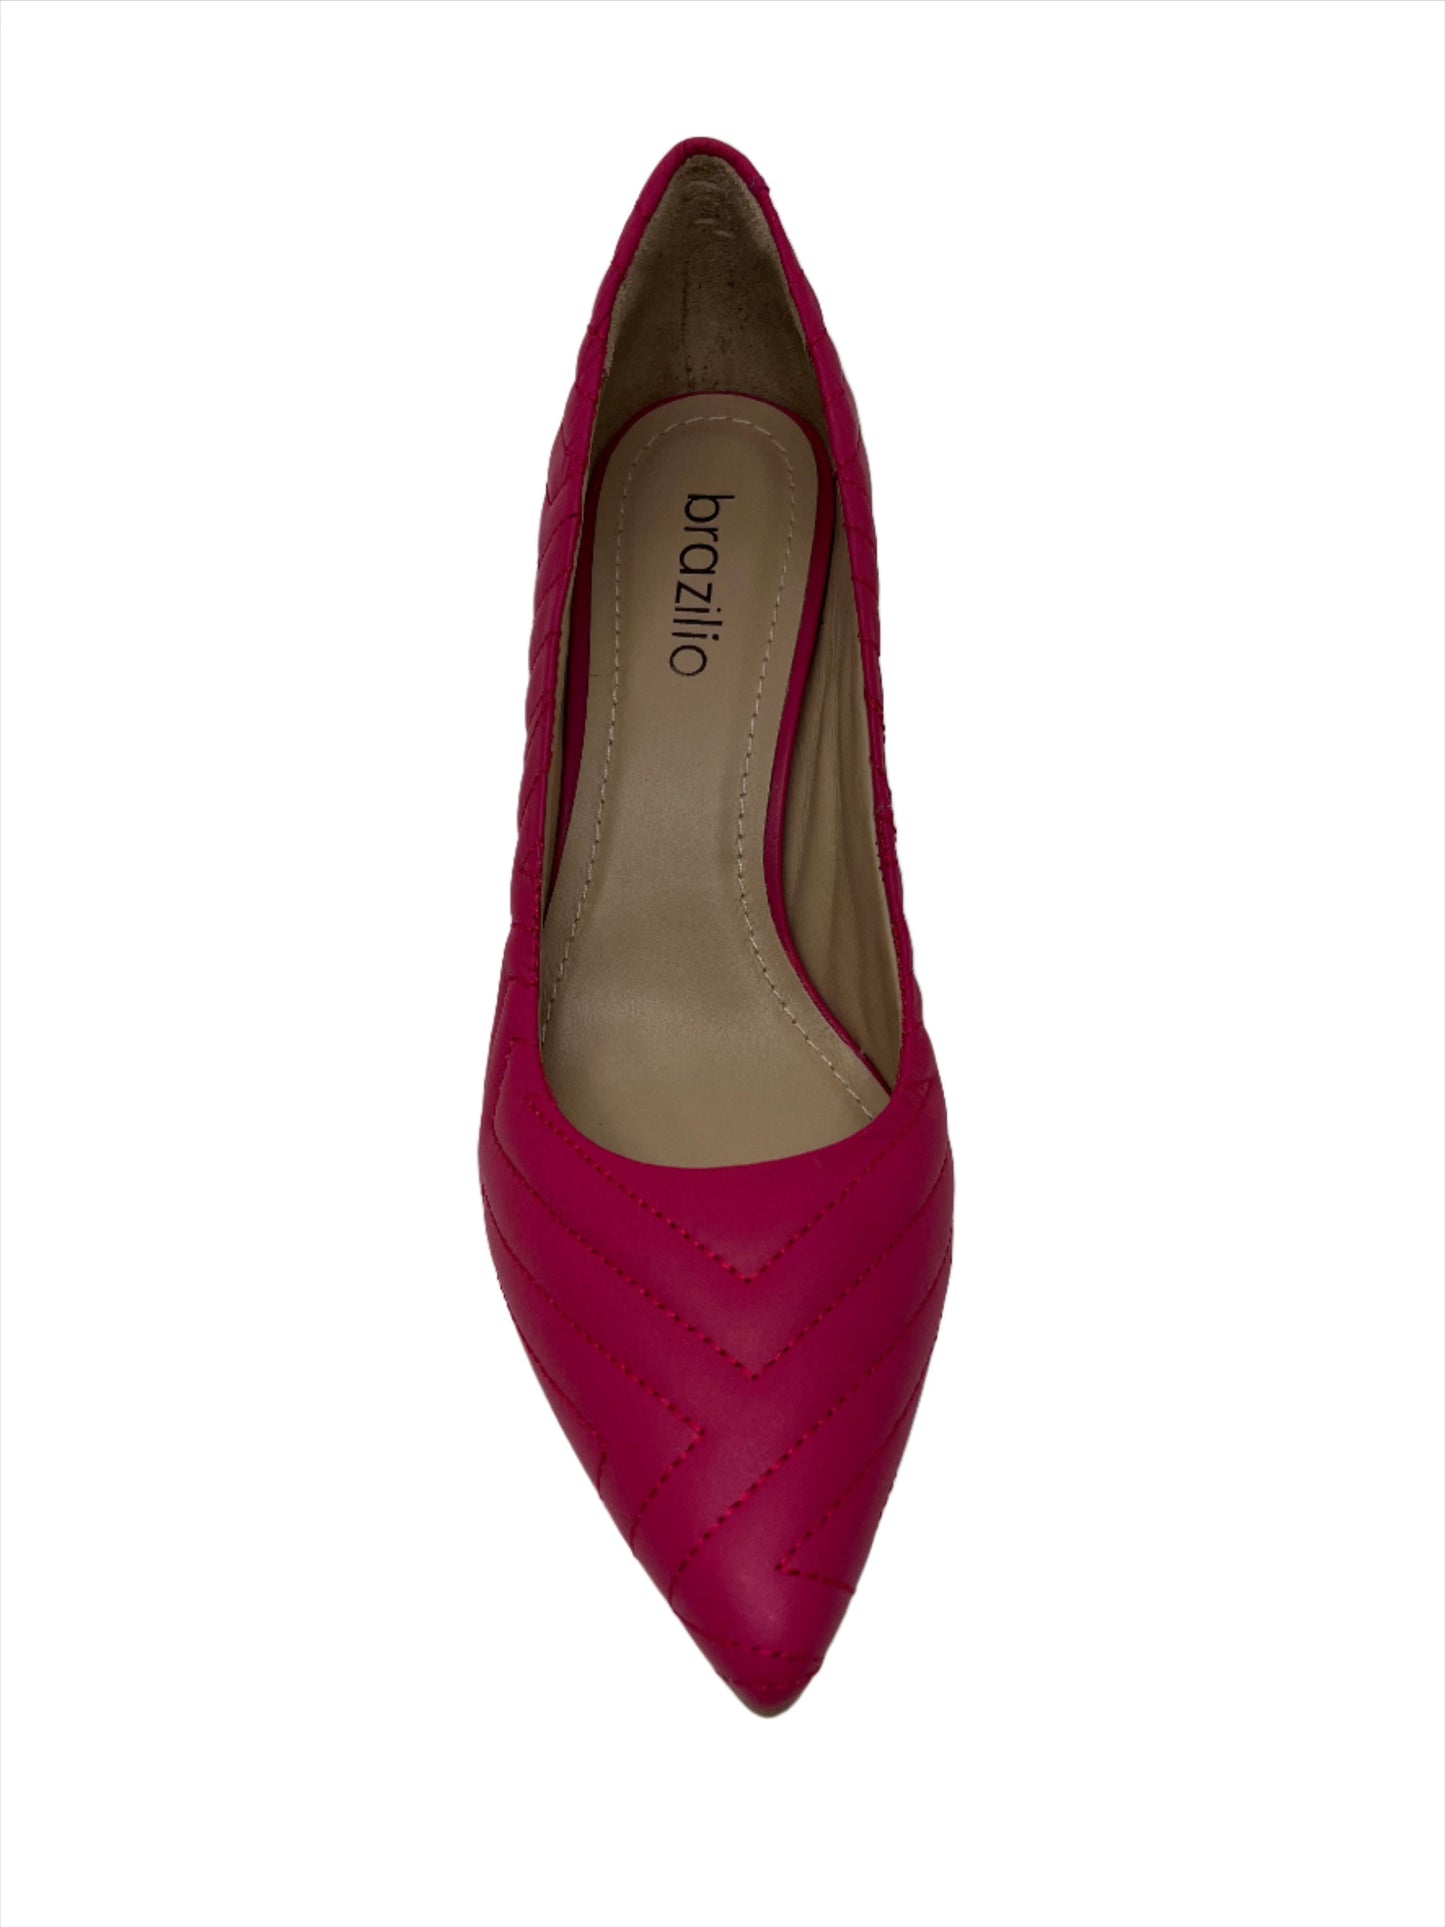 LOPEZ PUMP - BRAZILIO - 4670022, womens footwear - Stomp Shoes Darwin